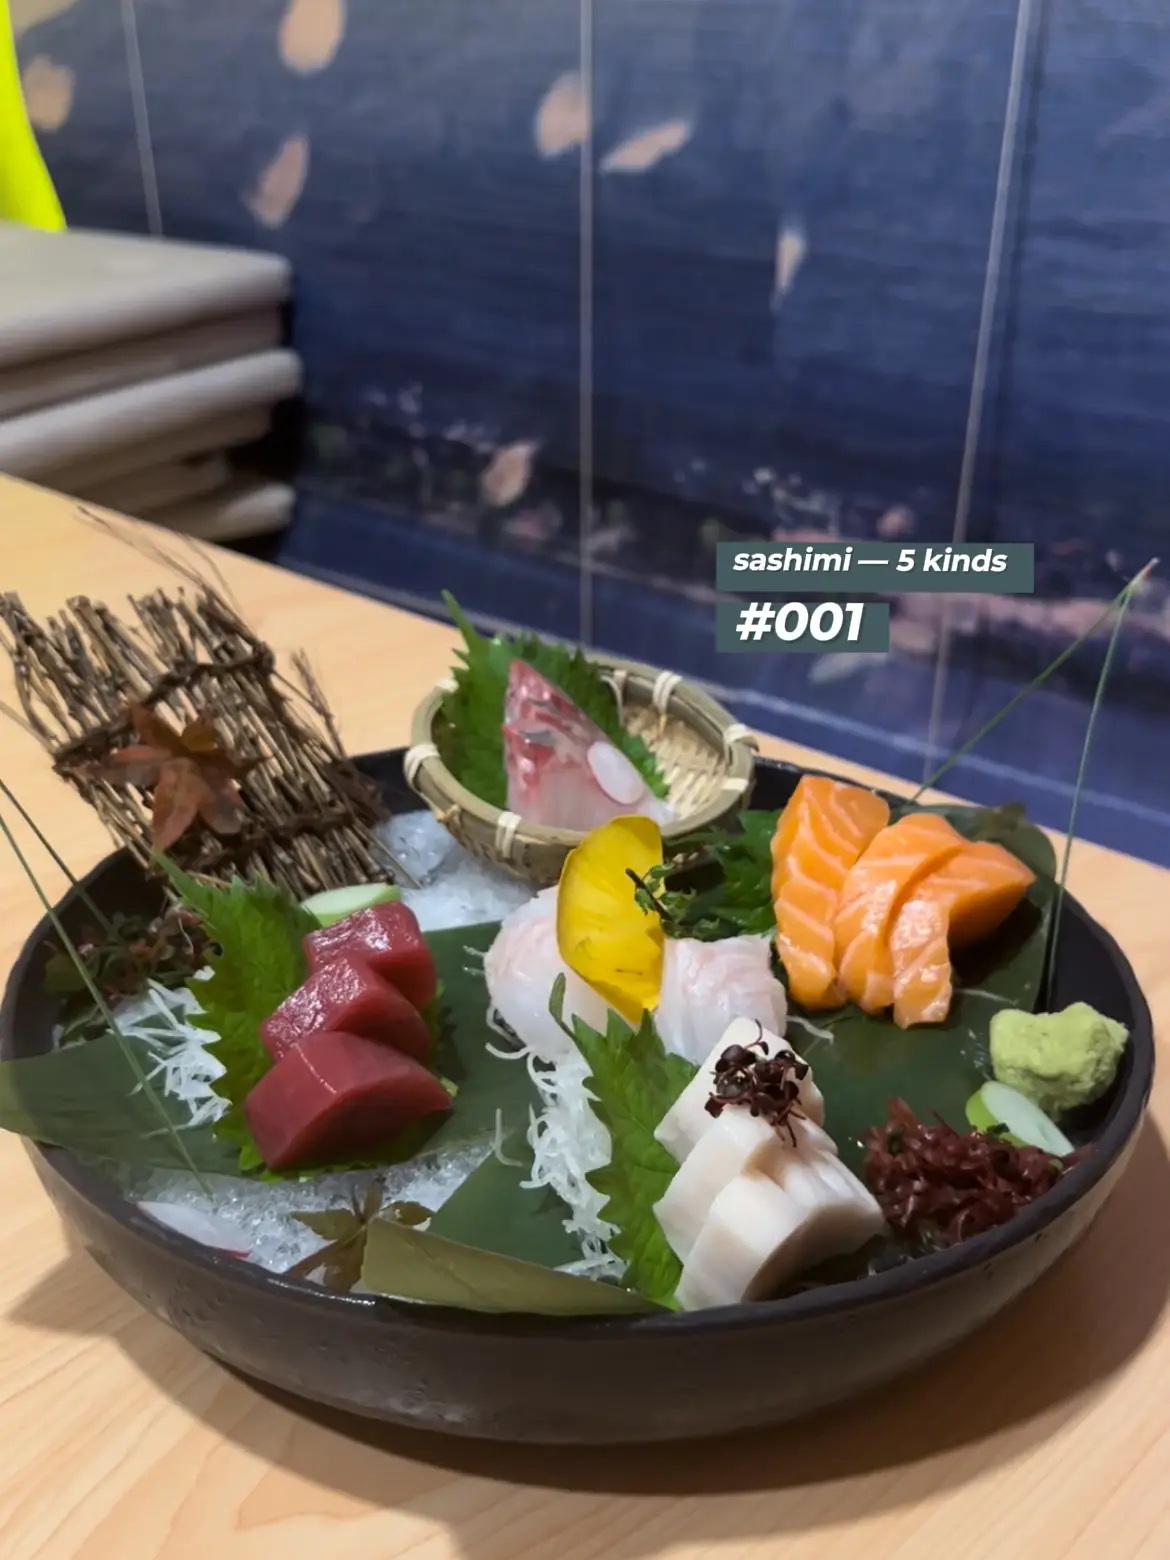 Affordable Japanese Restaurant at Golden Mile 🏮 's images(1)